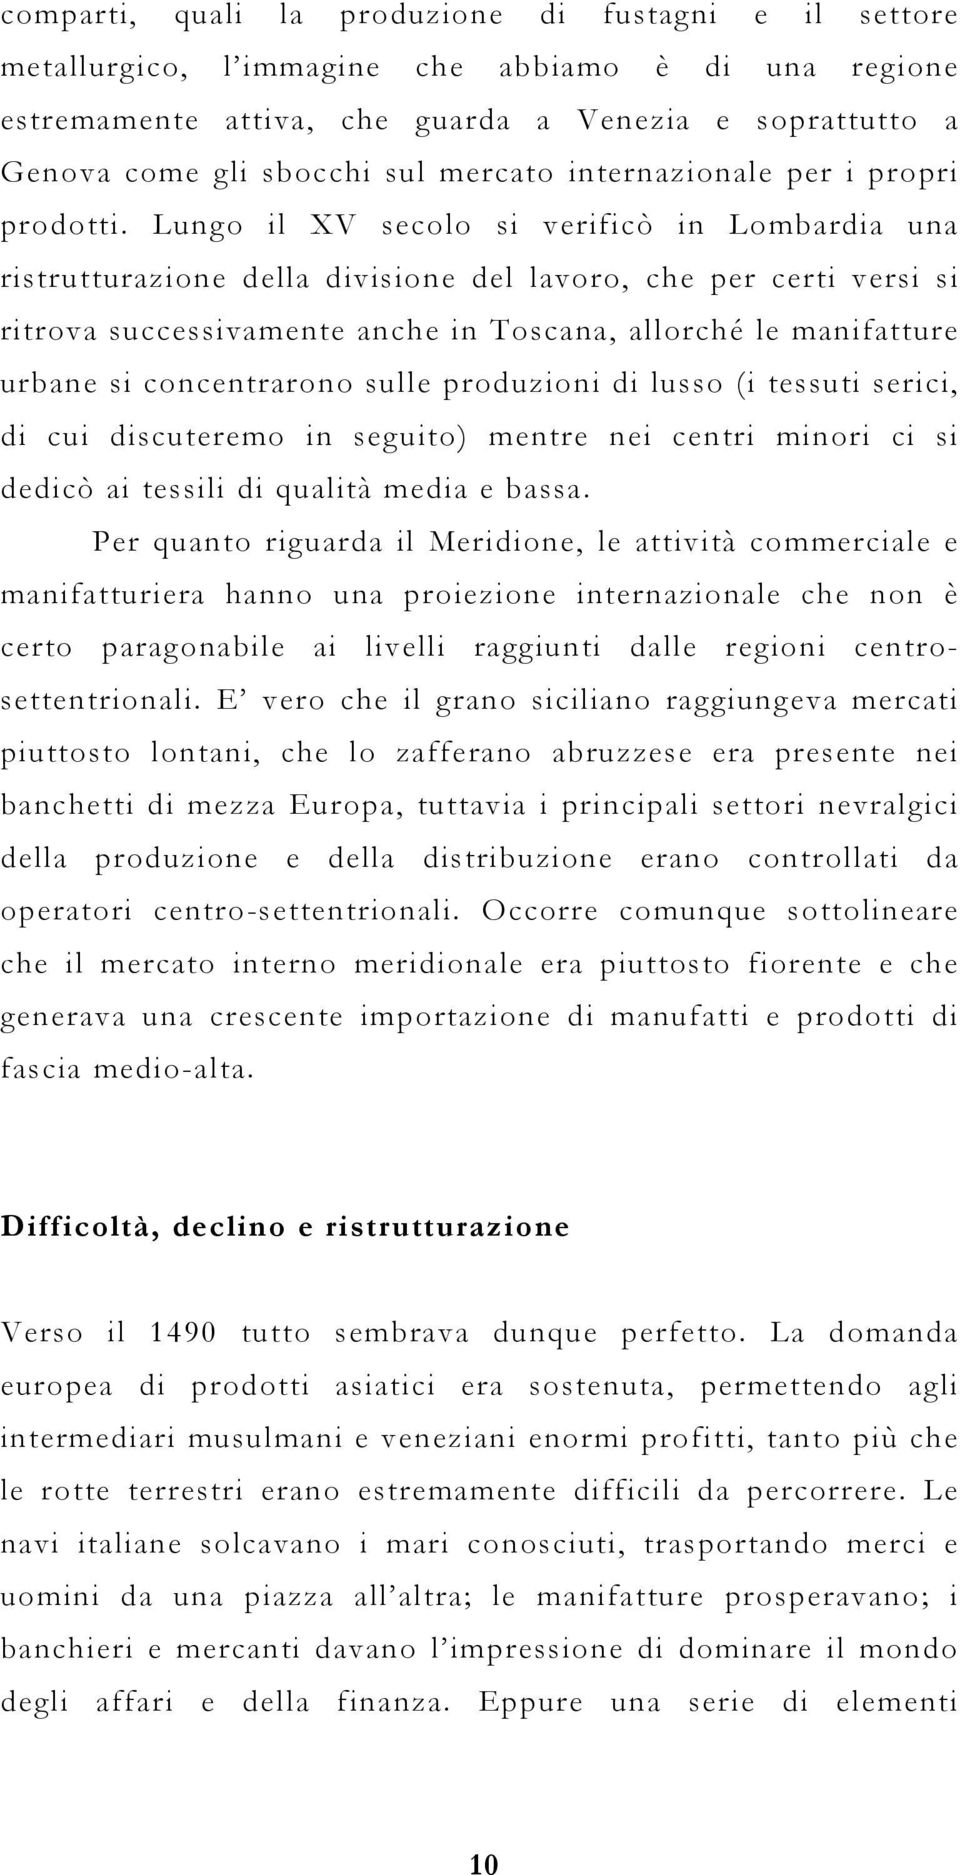 Lungo il XV secolo si verificò in Lombardia una ristrutturazione della divisione del lavoro, che per certi versi si ritrova successivamente anche in Toscana, allorché le manifatture urbane si